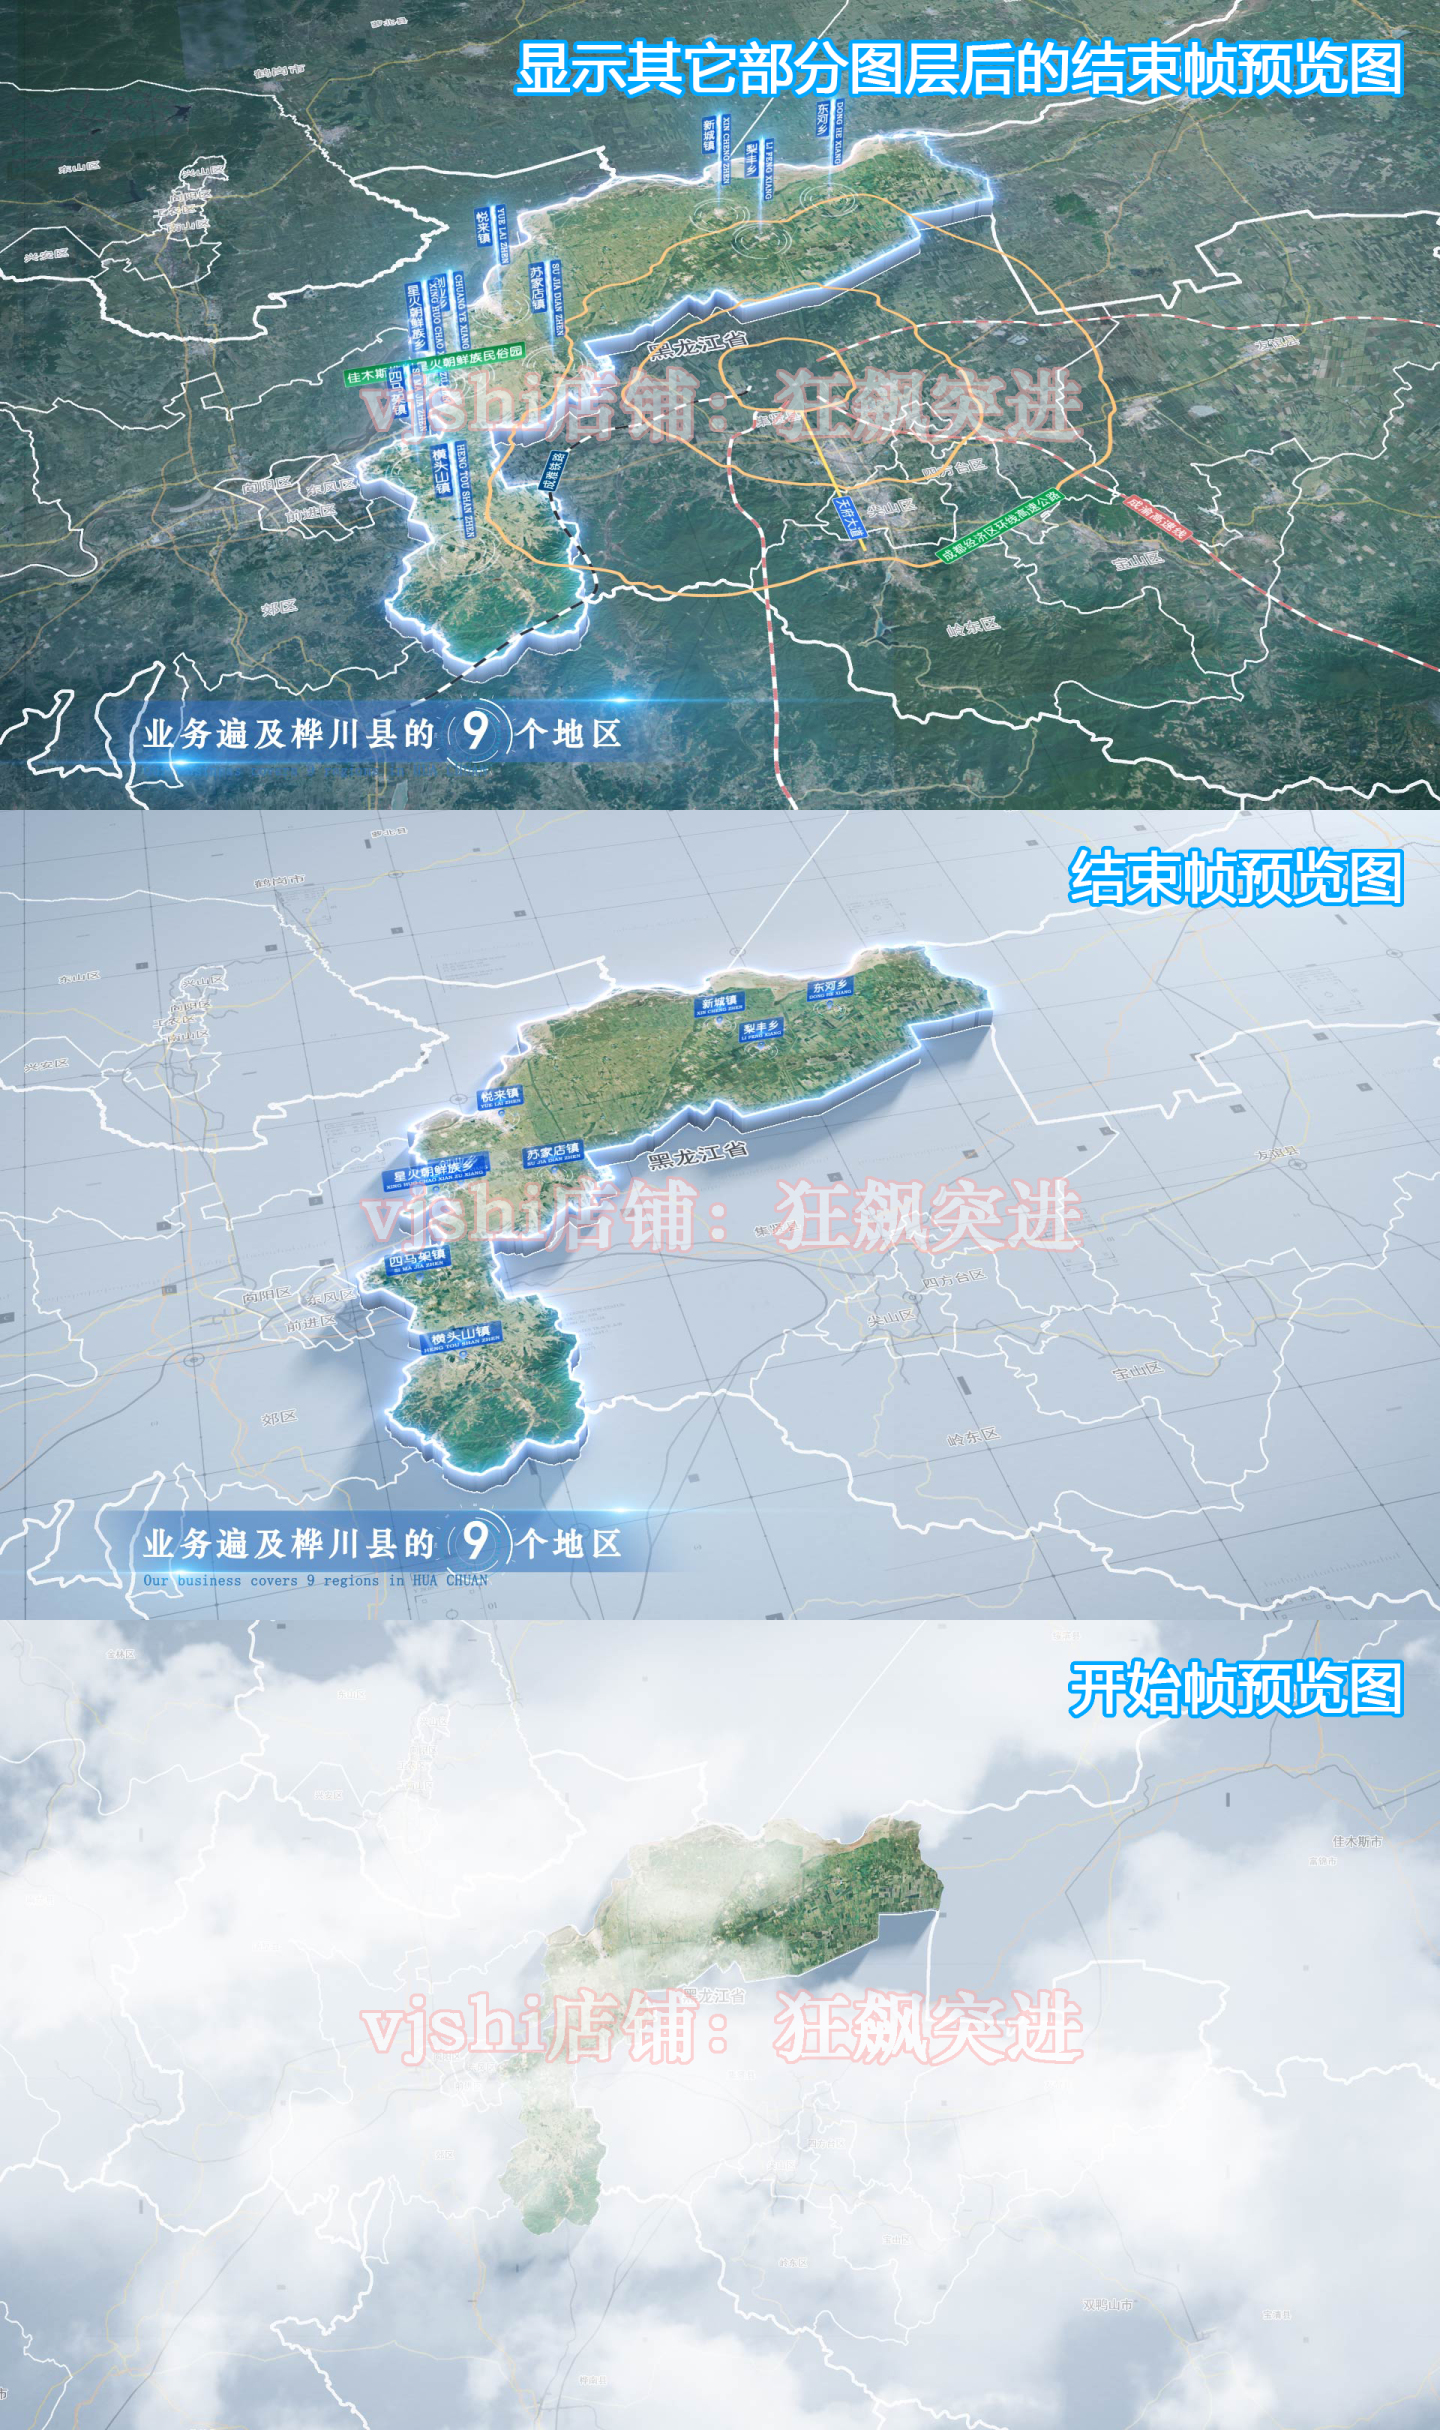 桦川县地图云中俯冲干净简约亮色三维区位